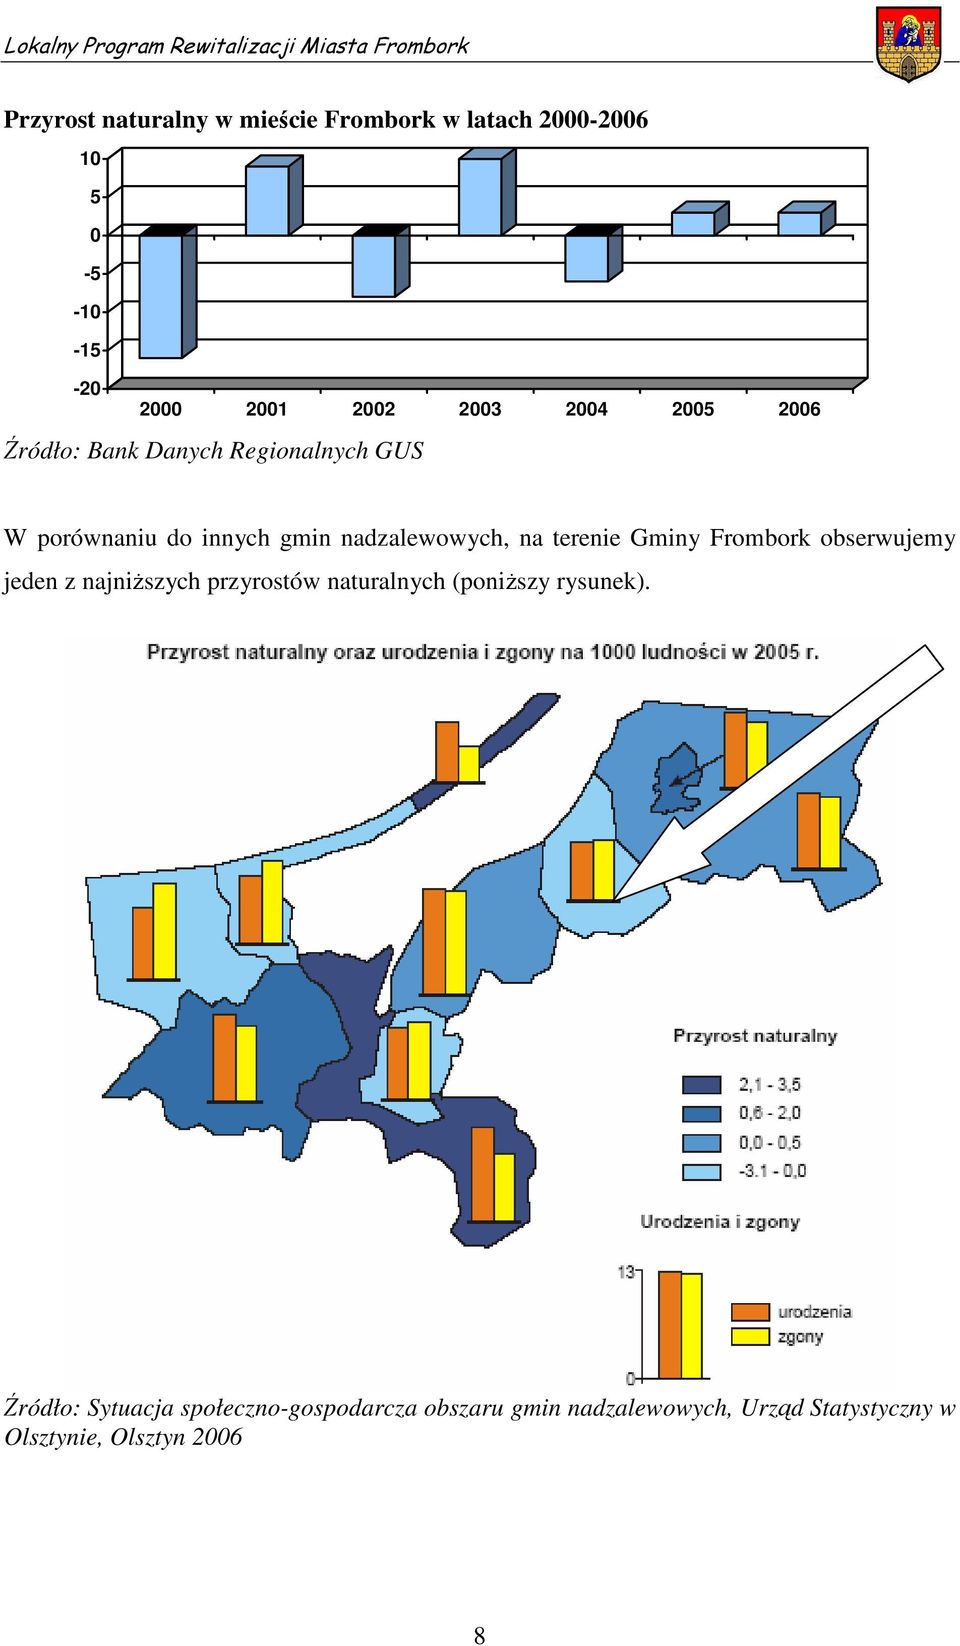 Gminy Frombork obserwujemy jeden z najniższych przyrostów naturalnych (poniższy rysunek).